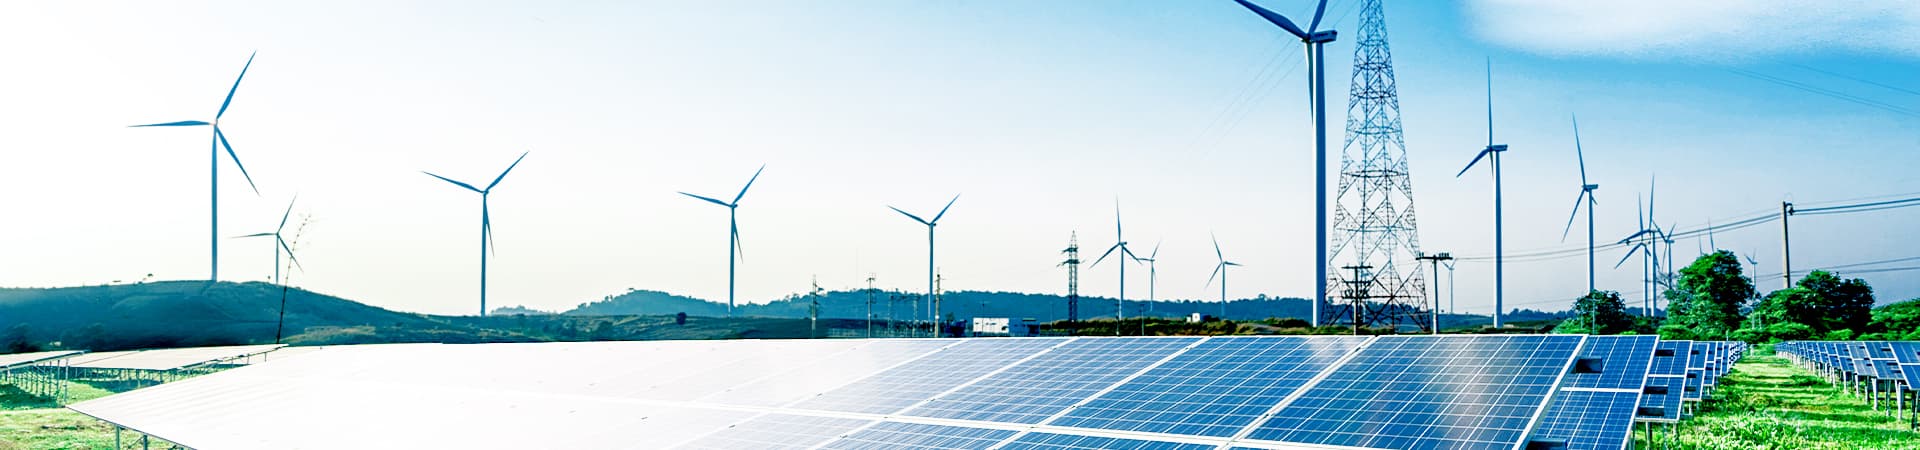 再生可能エネルギーへの投資